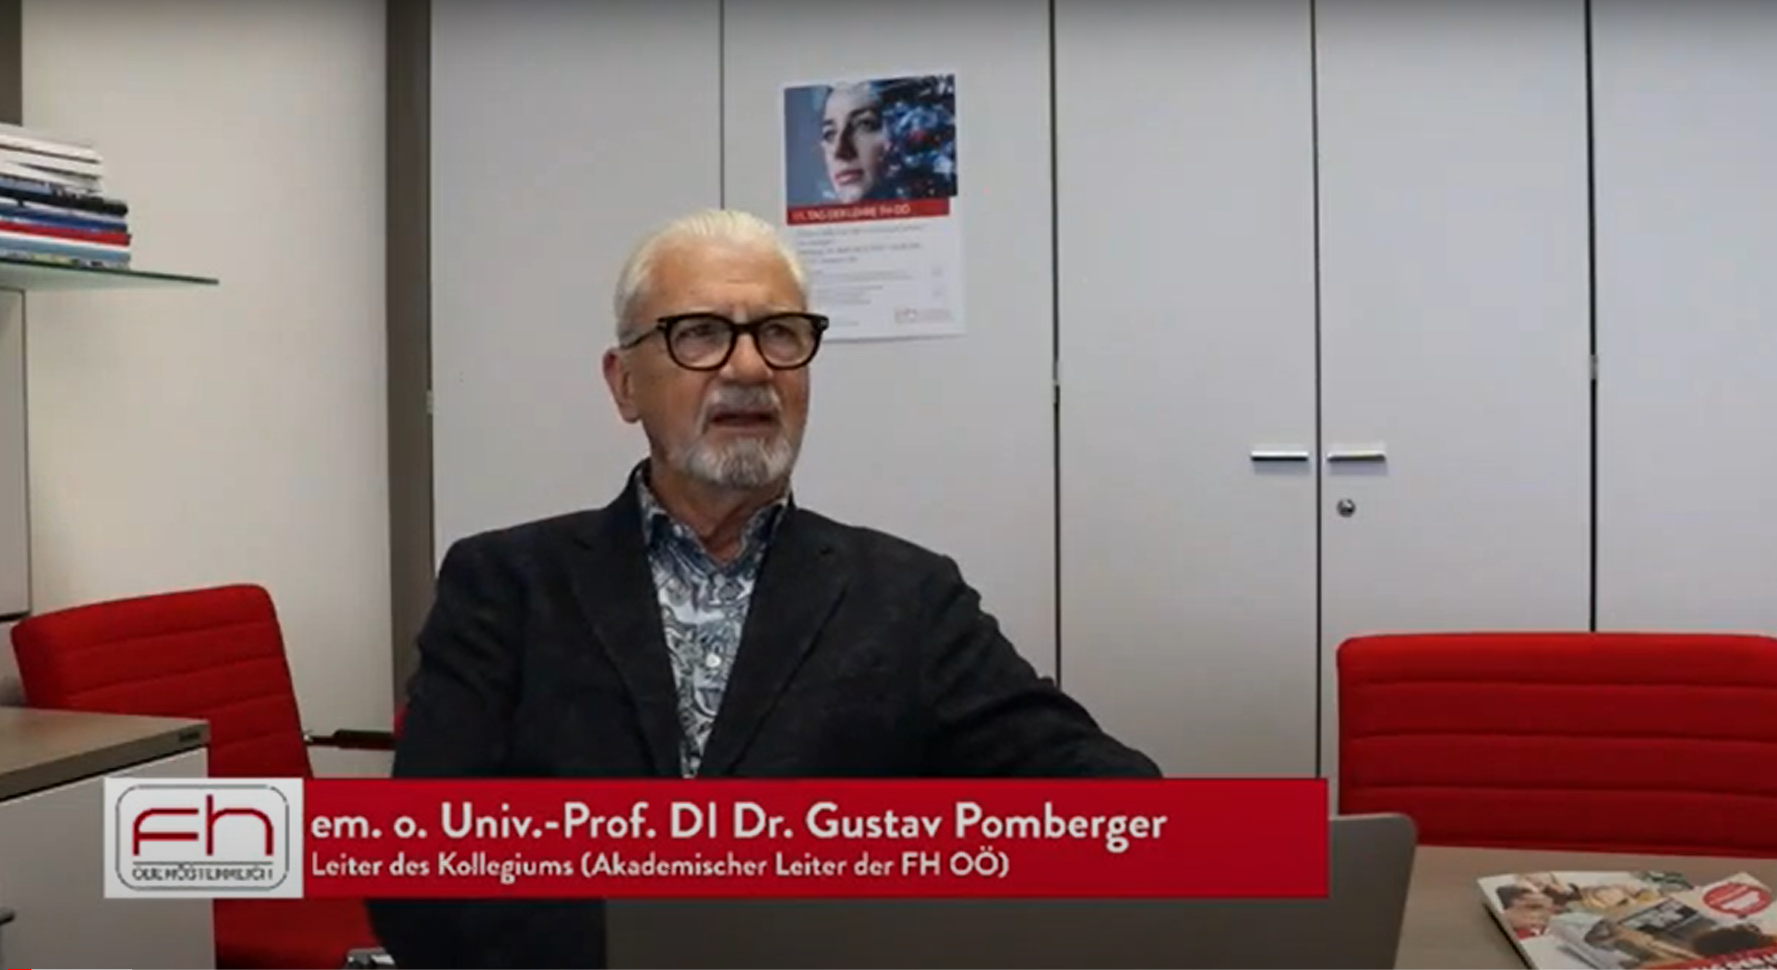 Auf diesem Bild ist em. o. Univ.-Prof. DI Dr. Gustav Pomberger, Leiter des Kollegiums der FH OÖ, zu sehen.